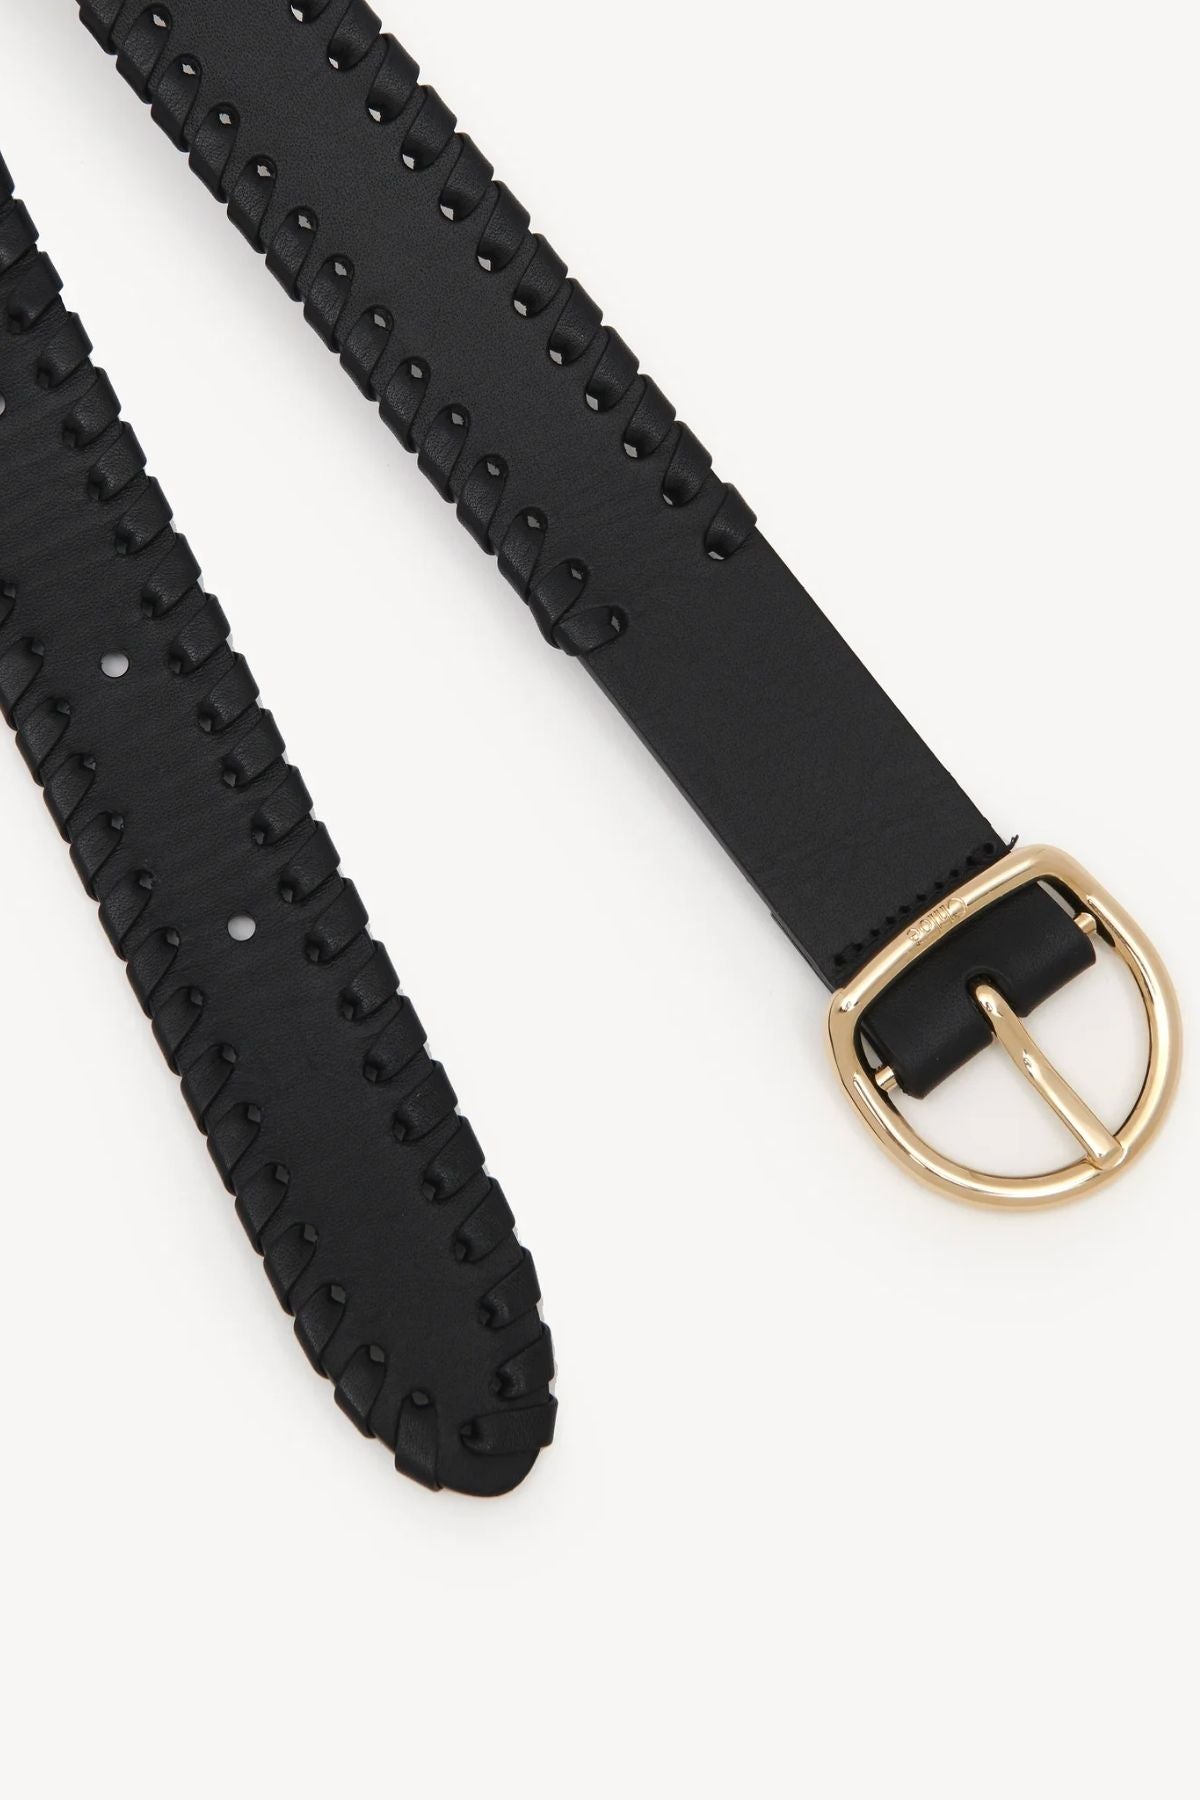 Chloé Mony Leather Belt - Black